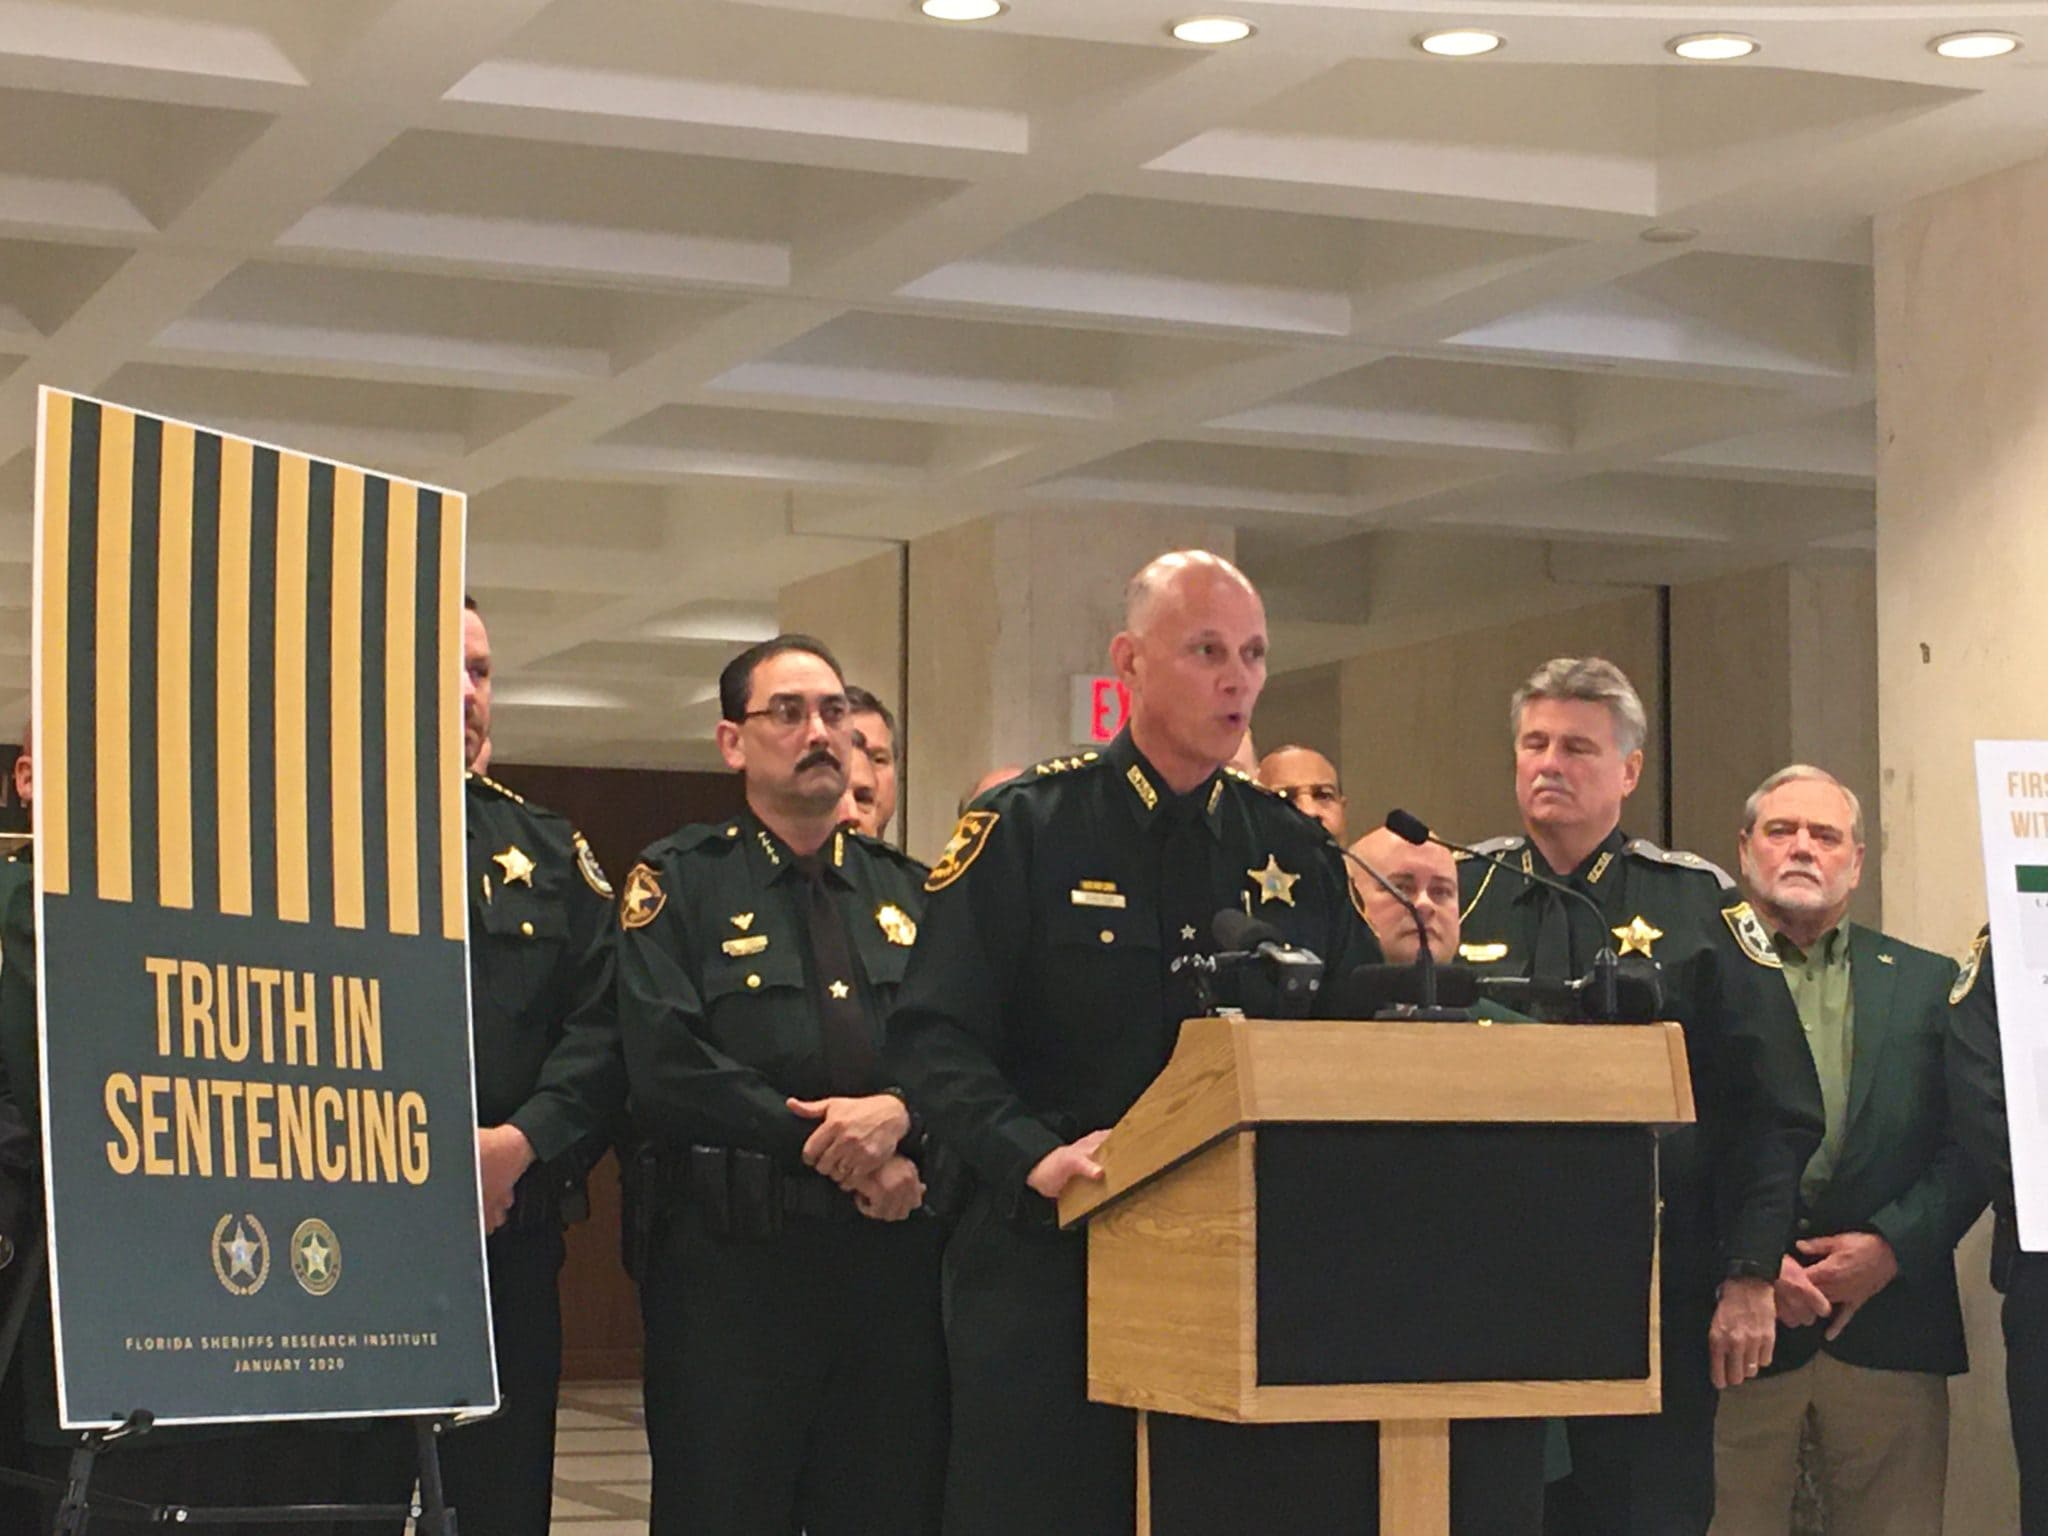 Los sheriffs de Florida encienden alarma sobre la “Verdad de las sentencias”